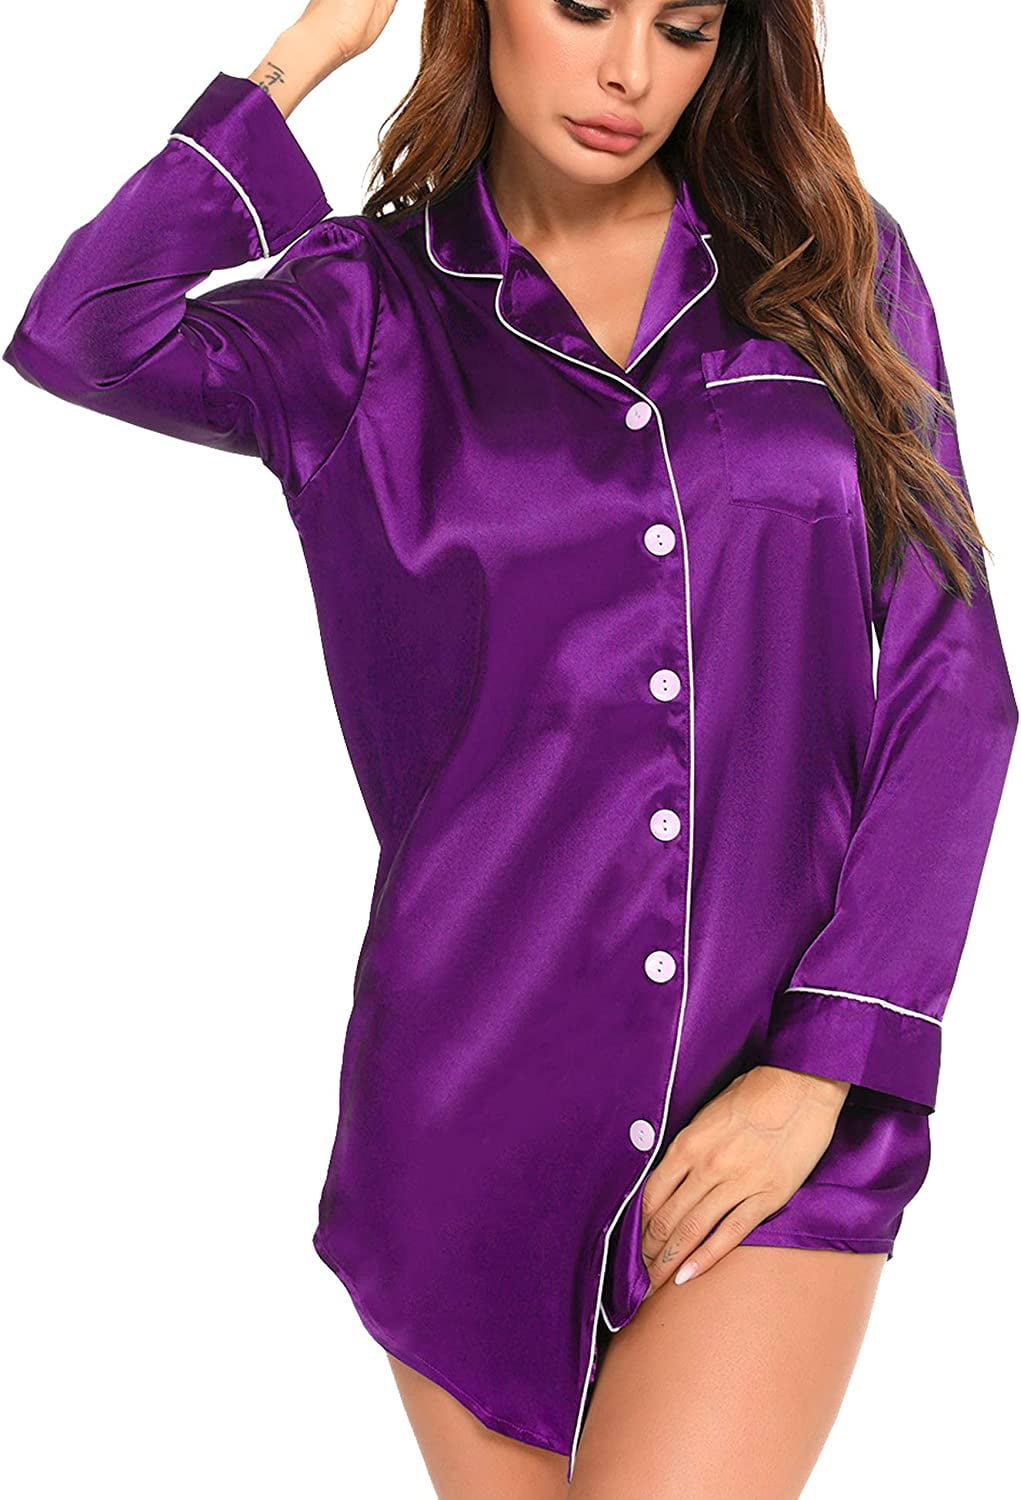 SWOMOG Women's Satin Sleep Shirt Long Sleeve Sleepwear Silk Nightshirt ...